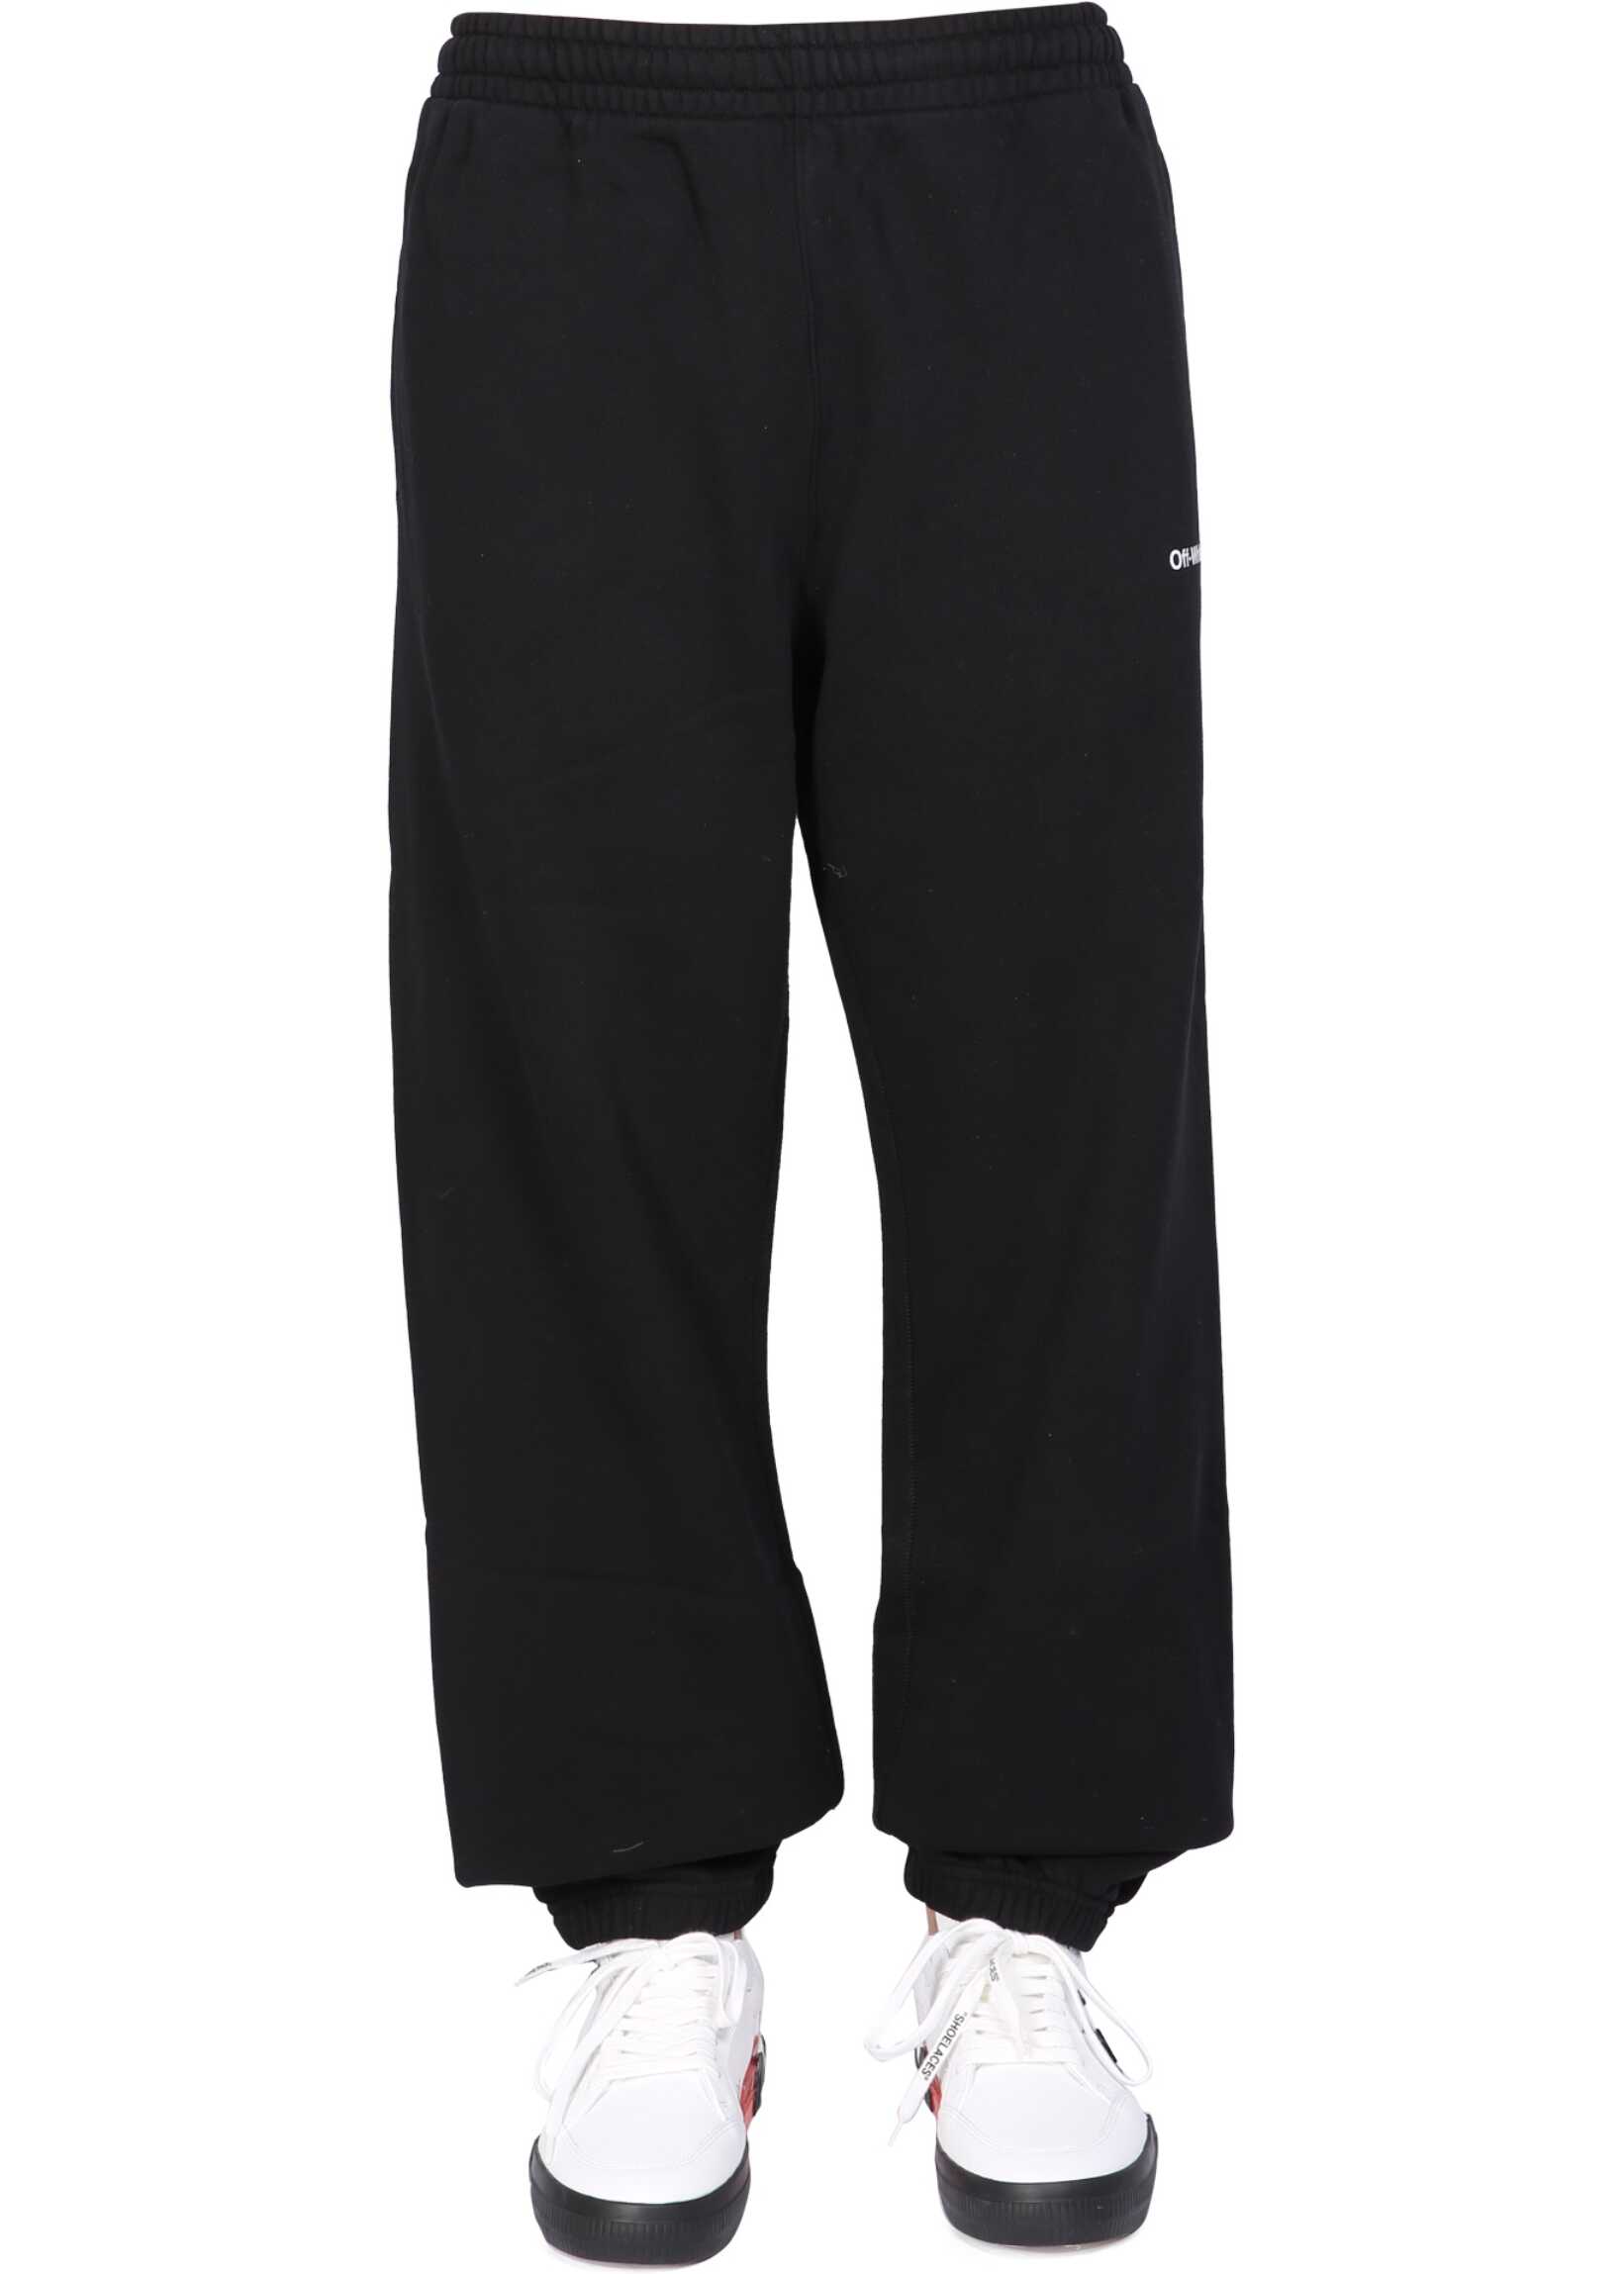 Off-White Jogging Pants "Arrow" BLACK